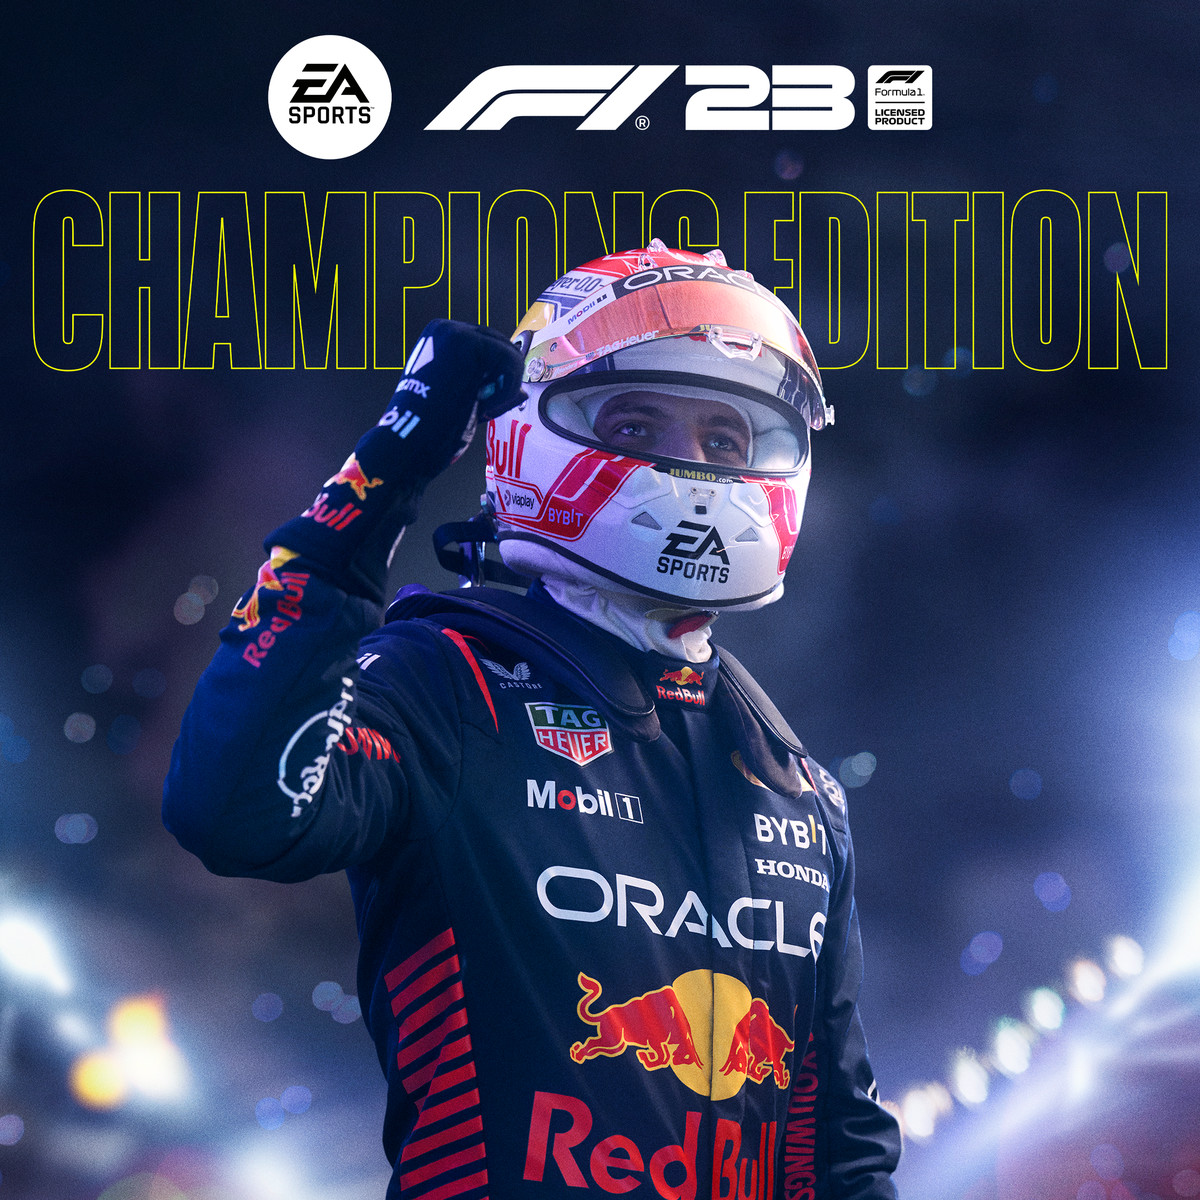 L'image de la couverture de l'édition Champions pour F1 23 ;  Max Verstappen portant sa combinaison de course officielle et son casque avec la visière relevée, célèbre avec une pompe à poing